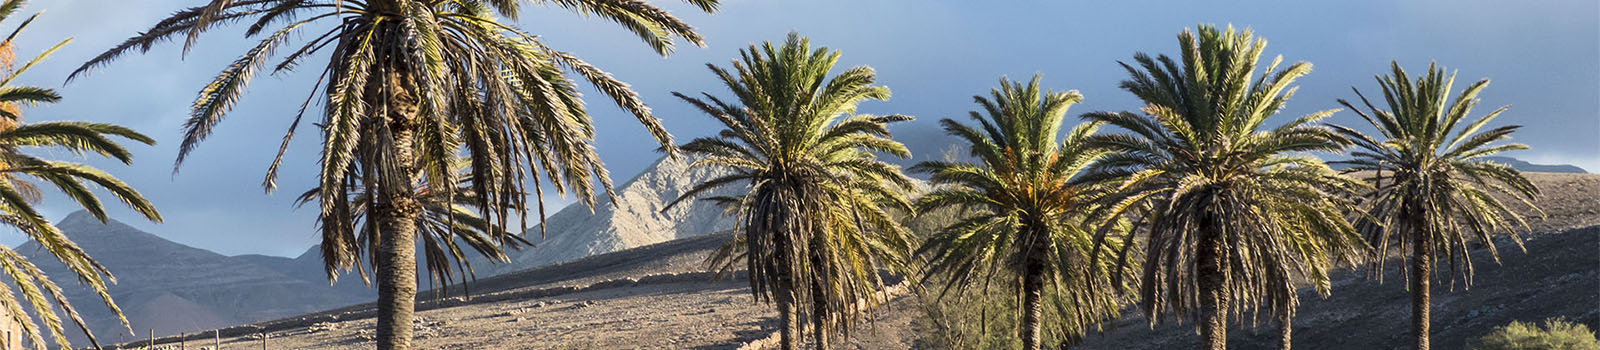 Basale Zone – die kanarische Palme.